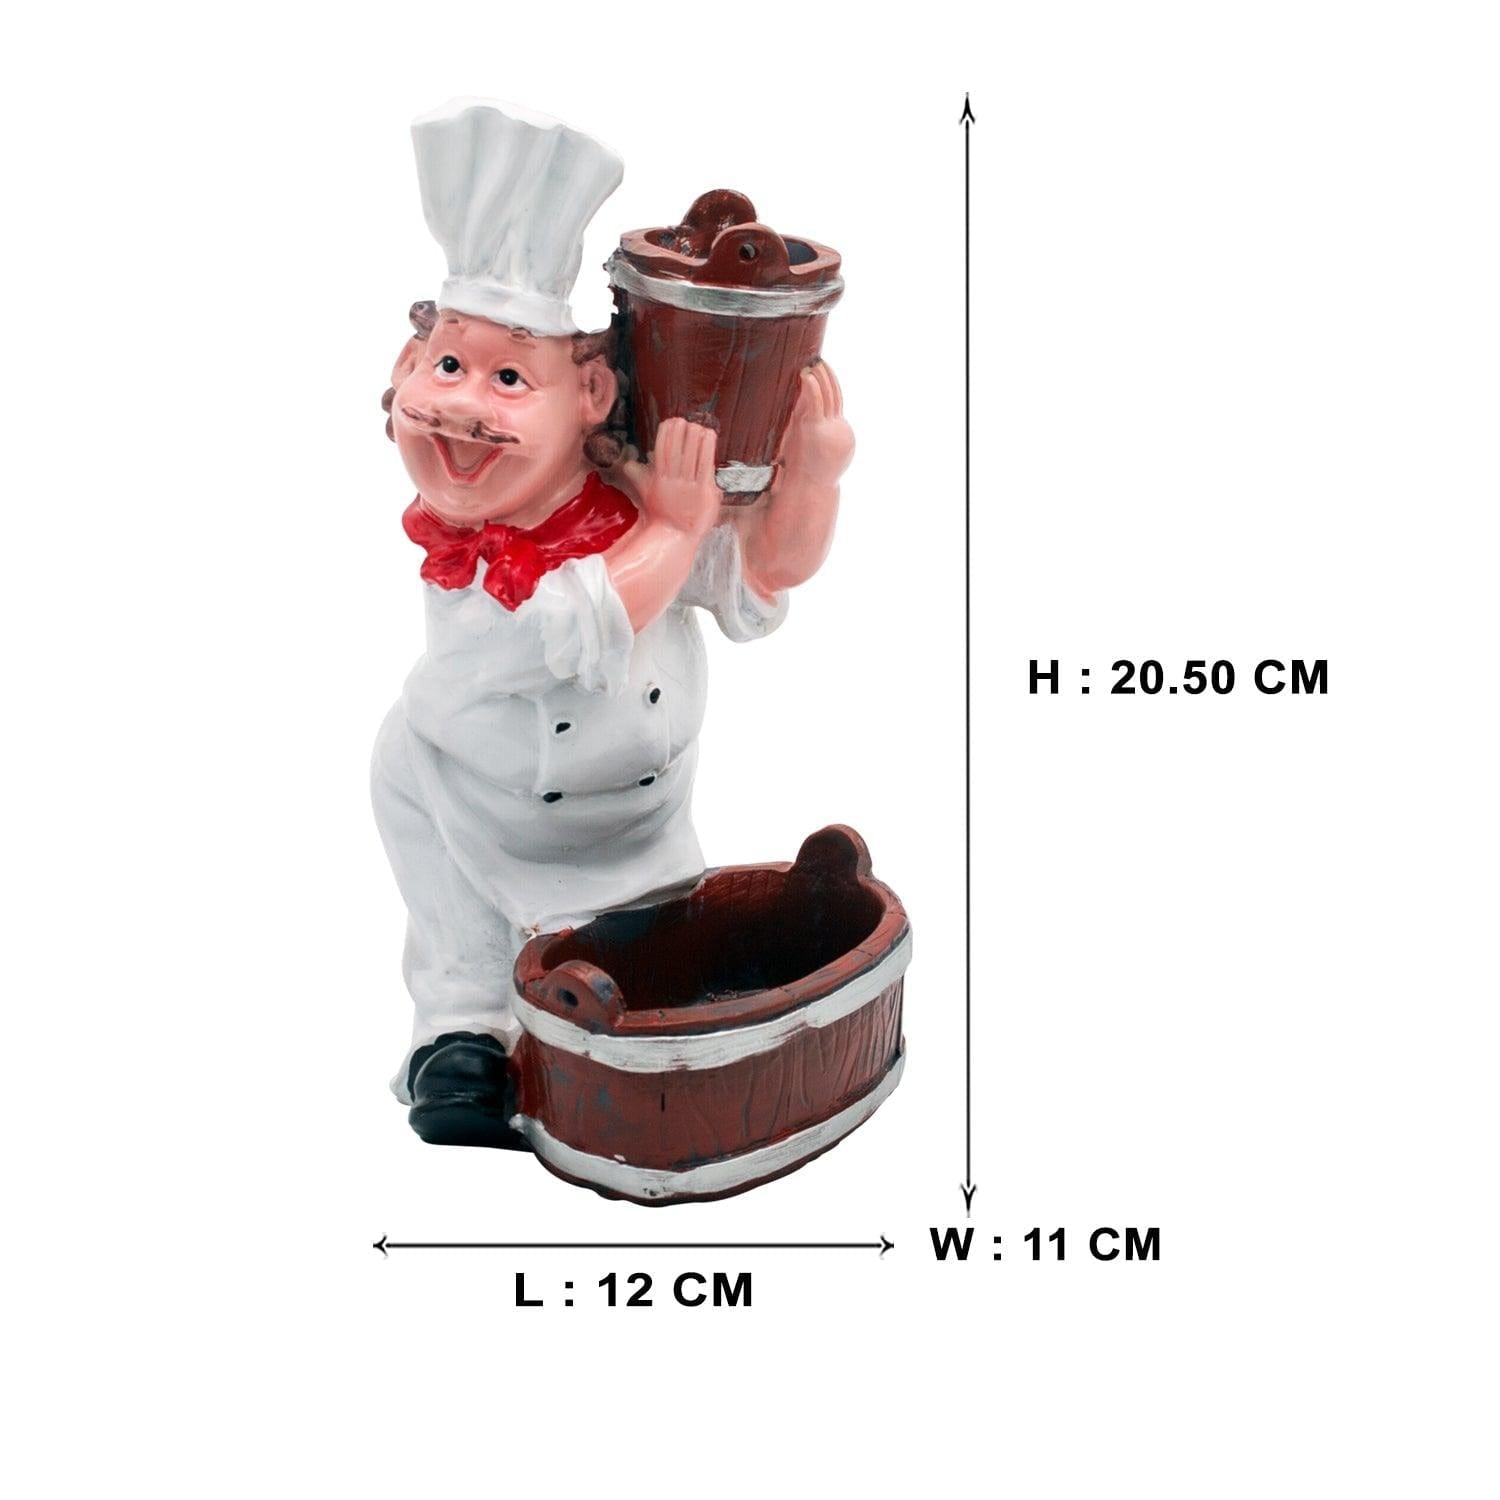 Foodie Chef Figurine Resin Salt & Pepper Shakers with Toothpick Holder Set (Basket on Shoulder)